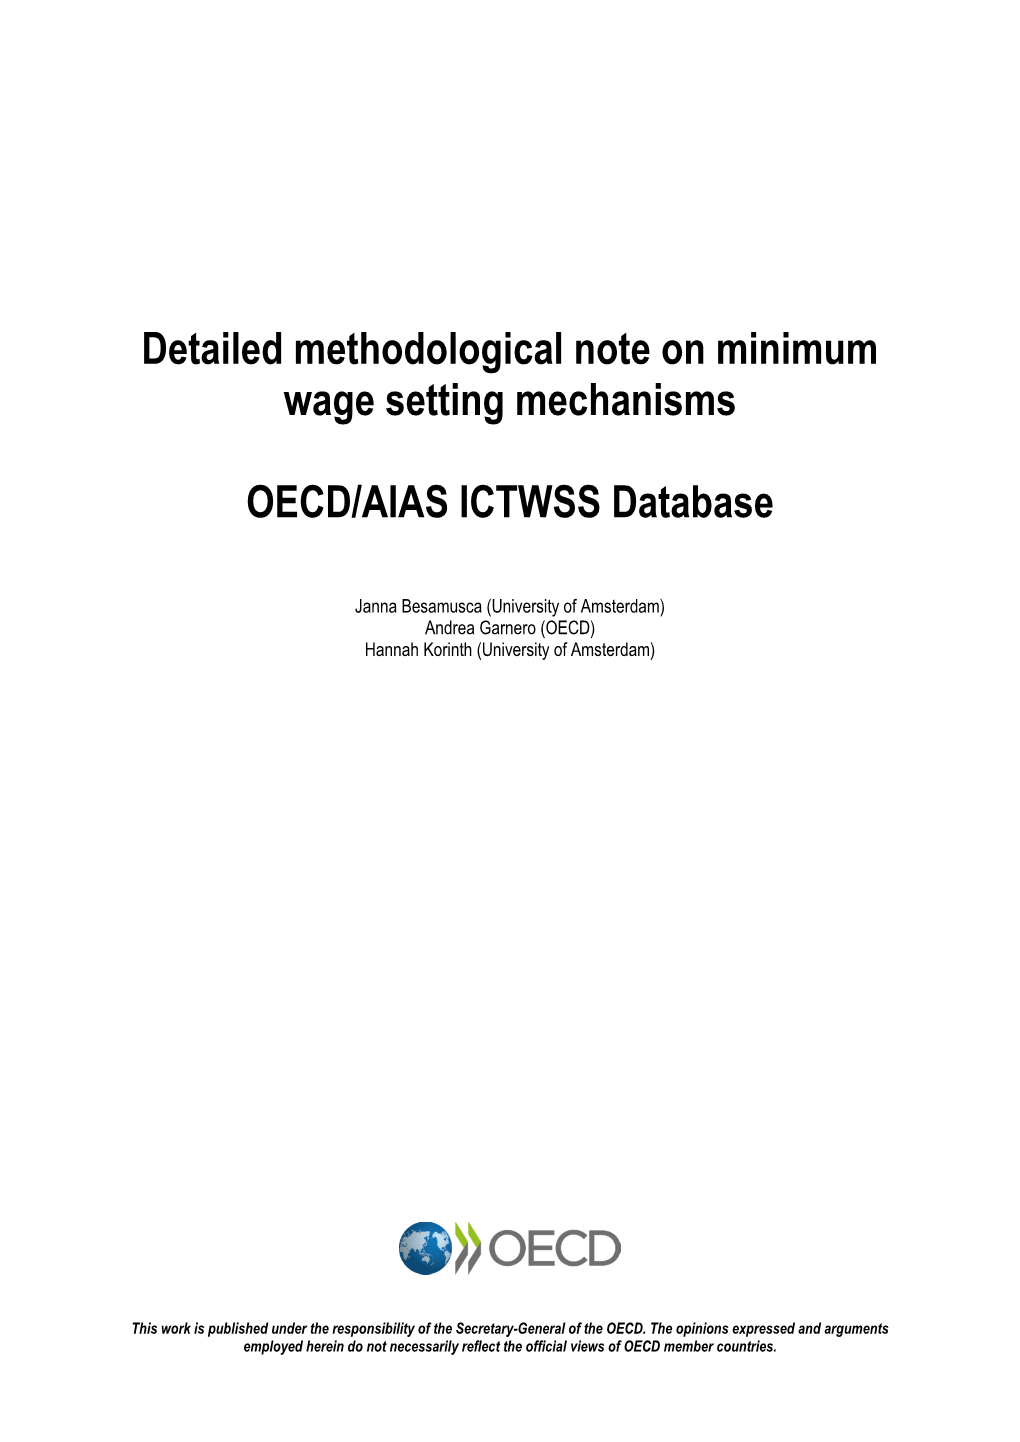 Detailed Methodological Note on Minimum Wage Setting Mechanisms